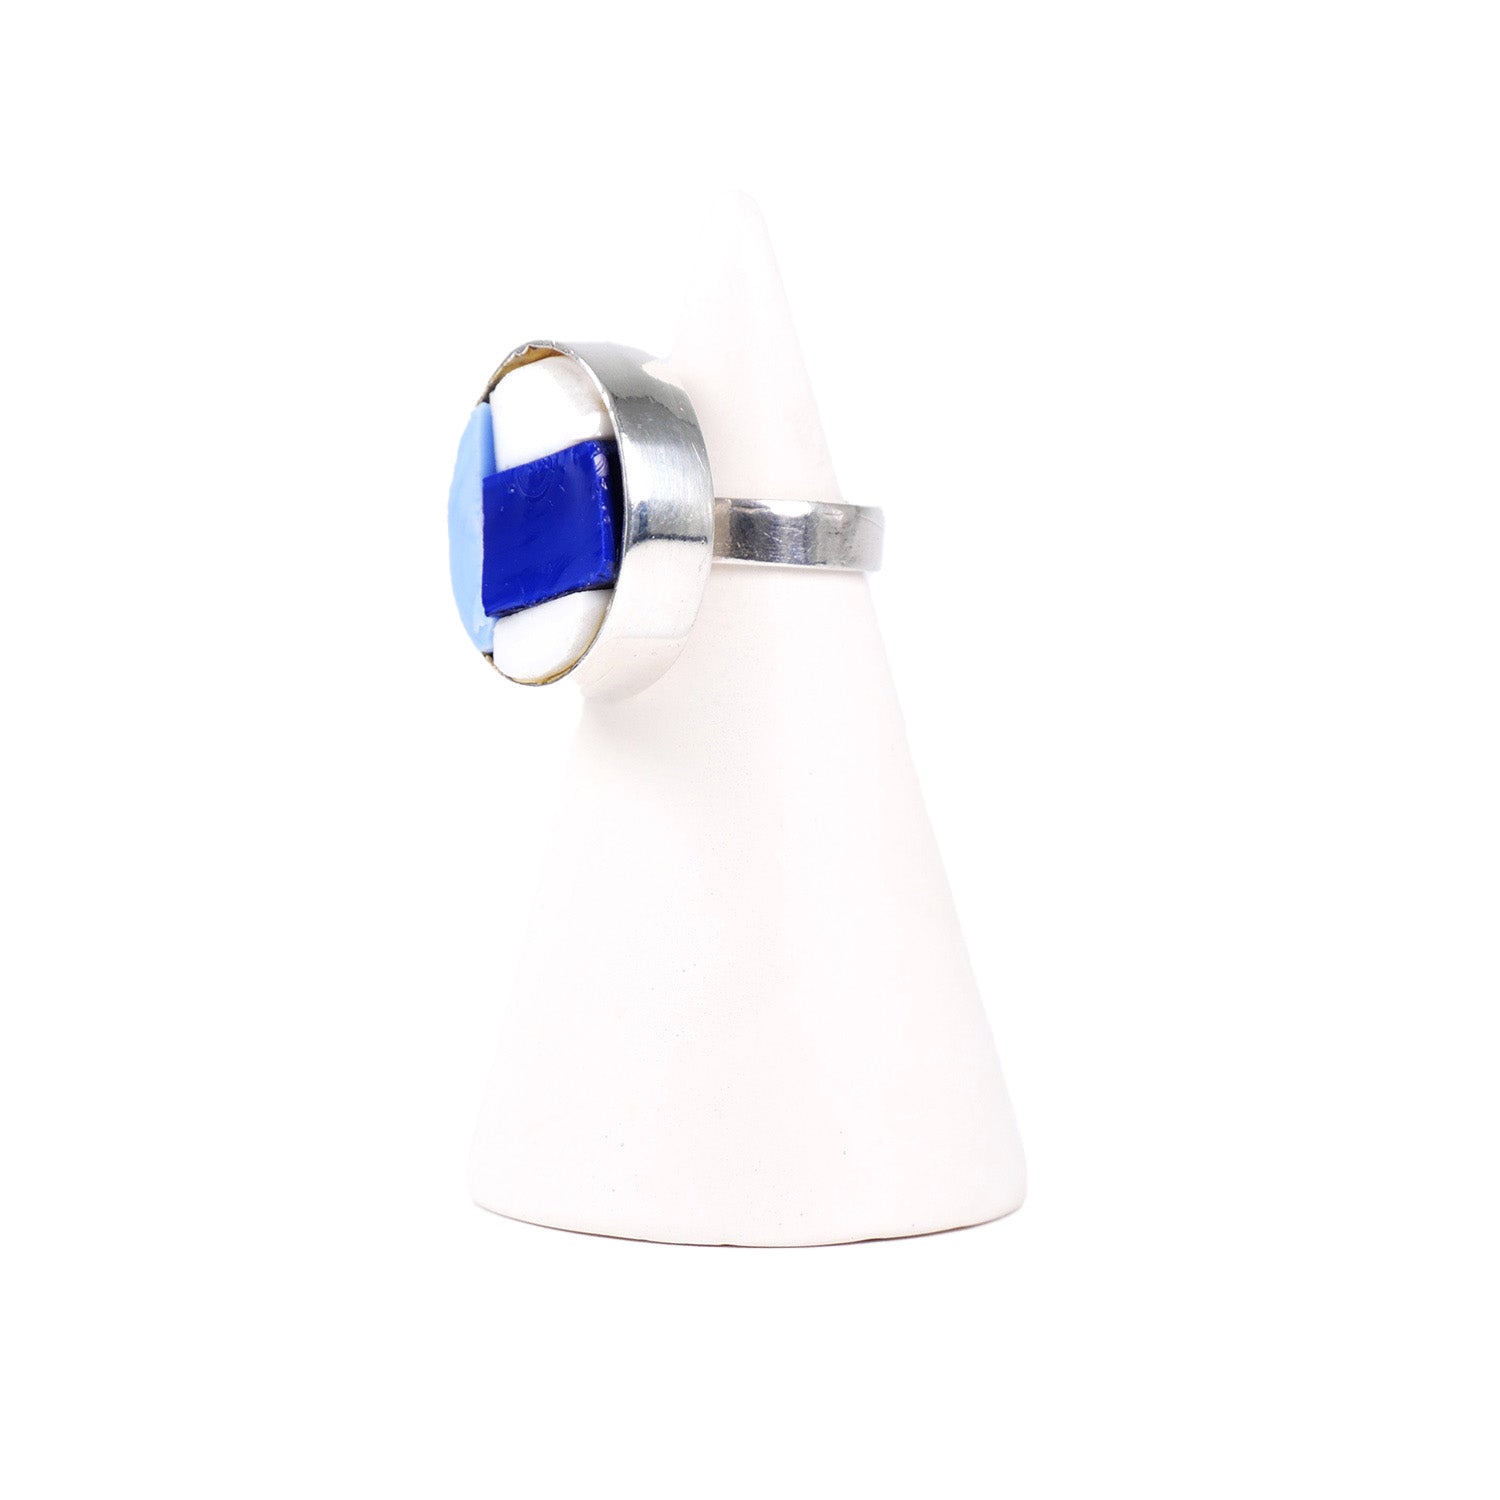 NILAJA [ニラジャ] / round glass ring [ラウンドグラスリング] (blue2)